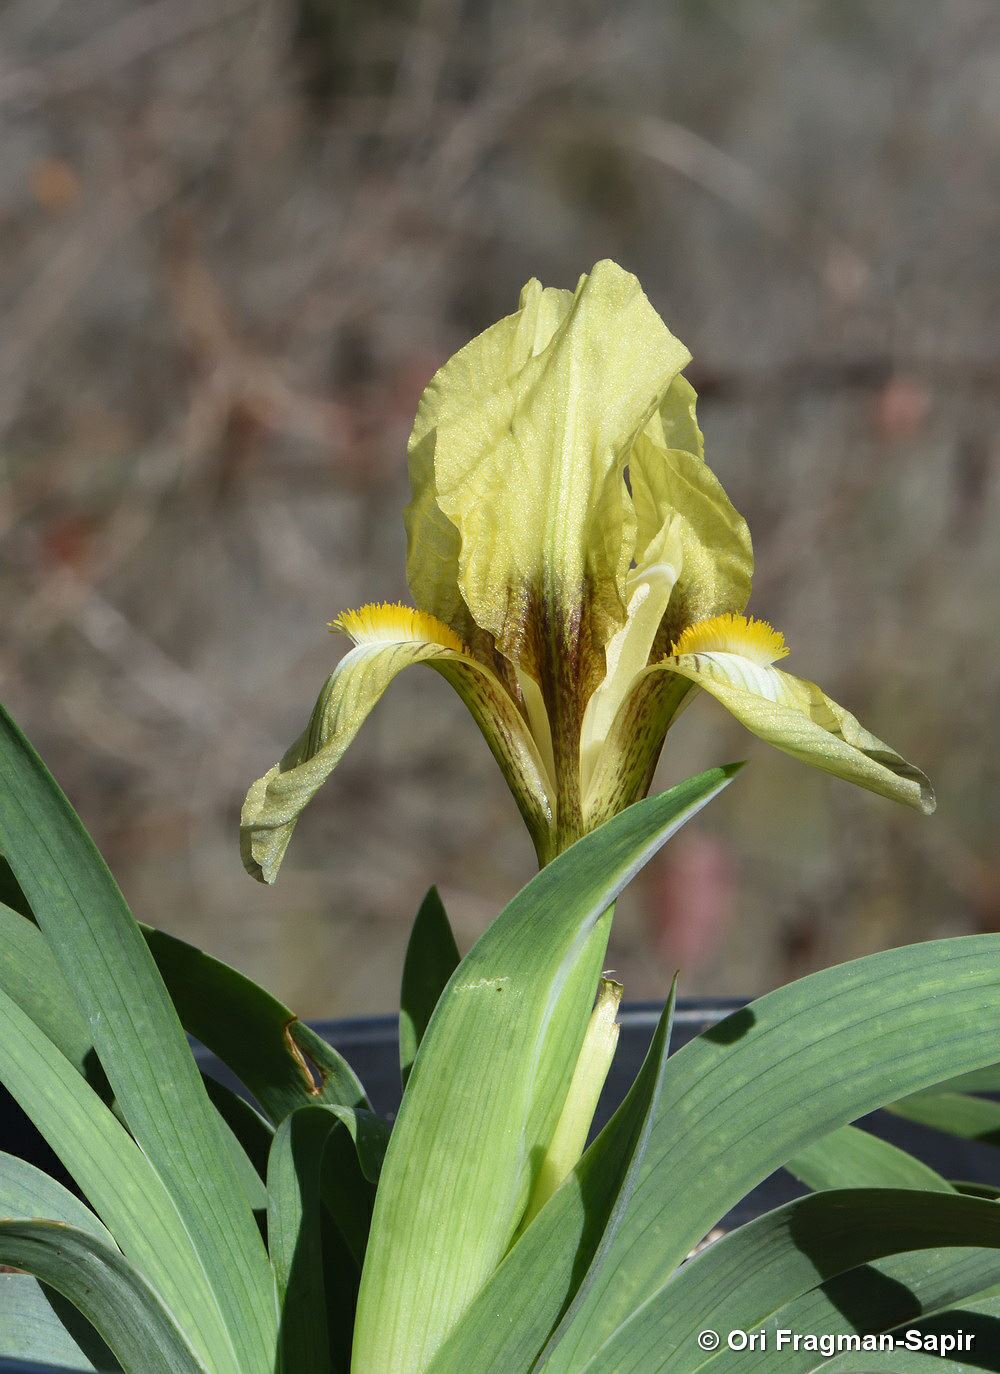 Iris suaveolens - Sweet-scented Iris, איריס ריחני, איריס ריחני